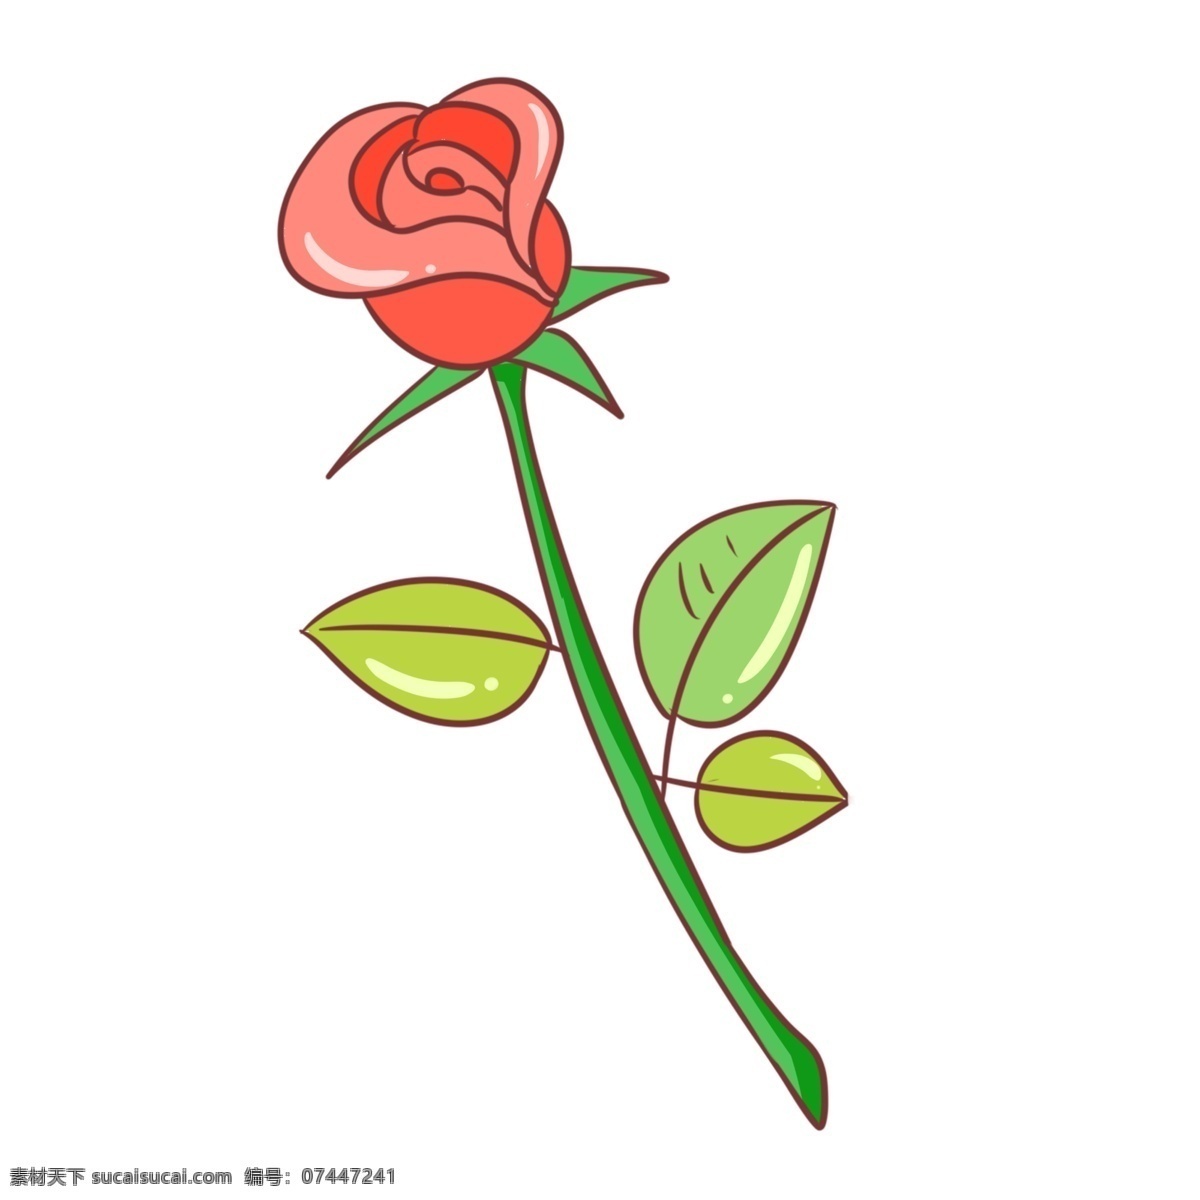 手绘 情人节 玫瑰 插画 红色的玫瑰花 漂亮的玫瑰花 卡通插画 情人节礼物 绿色的椅子